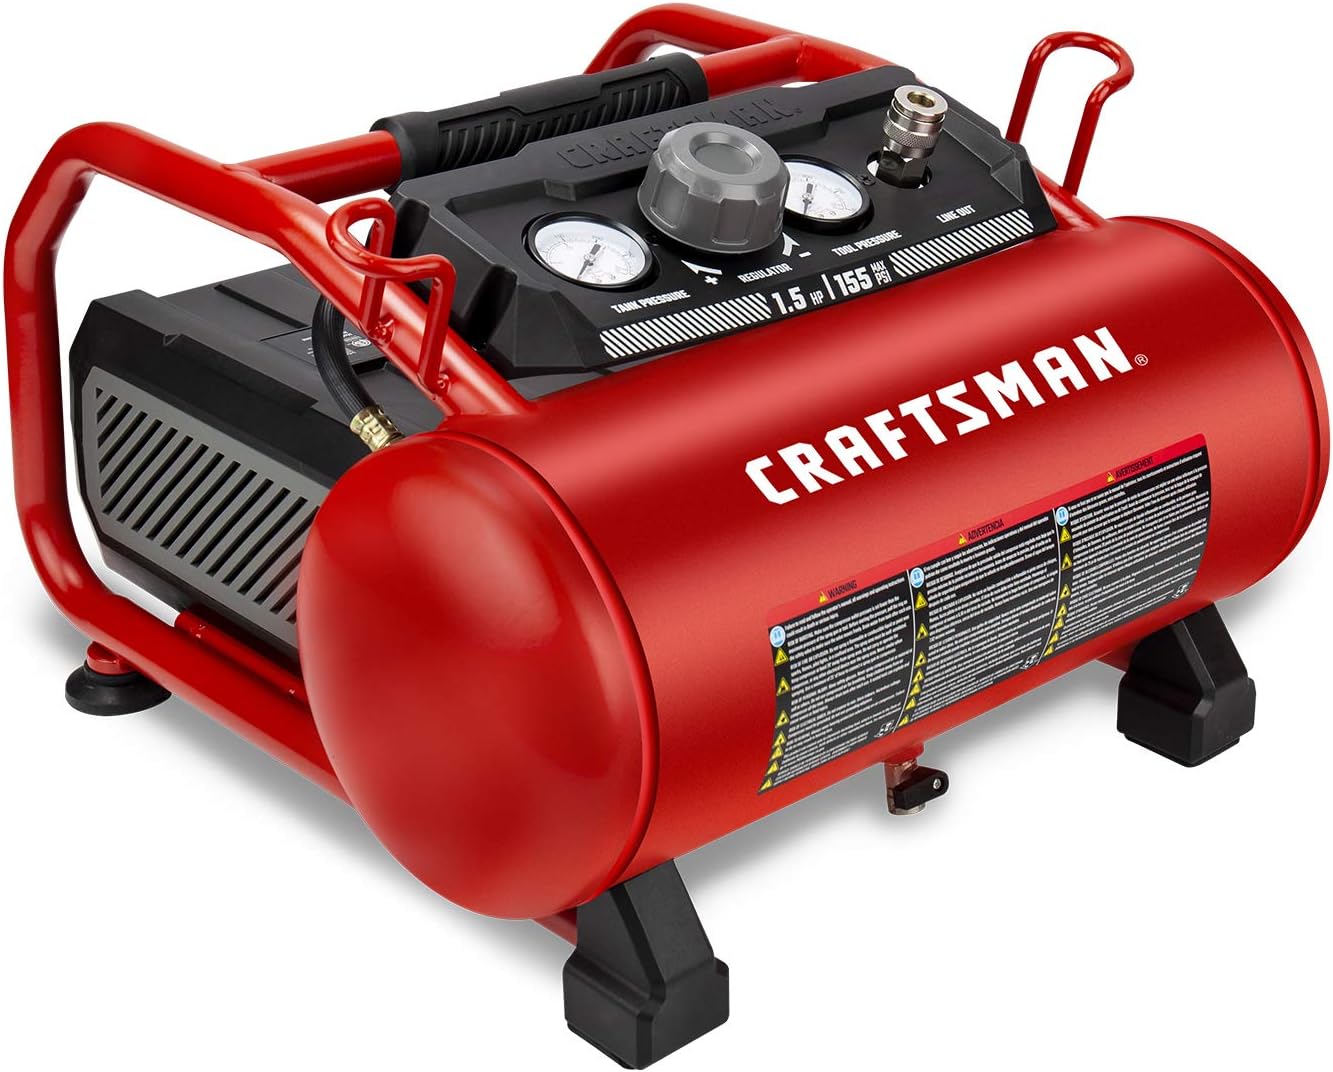 Craftsman Air Compressor, 3 Gallon 1.5 HP Max 155 Psi Pressure Oil-Free Portable, Red- CMXECXA0200341